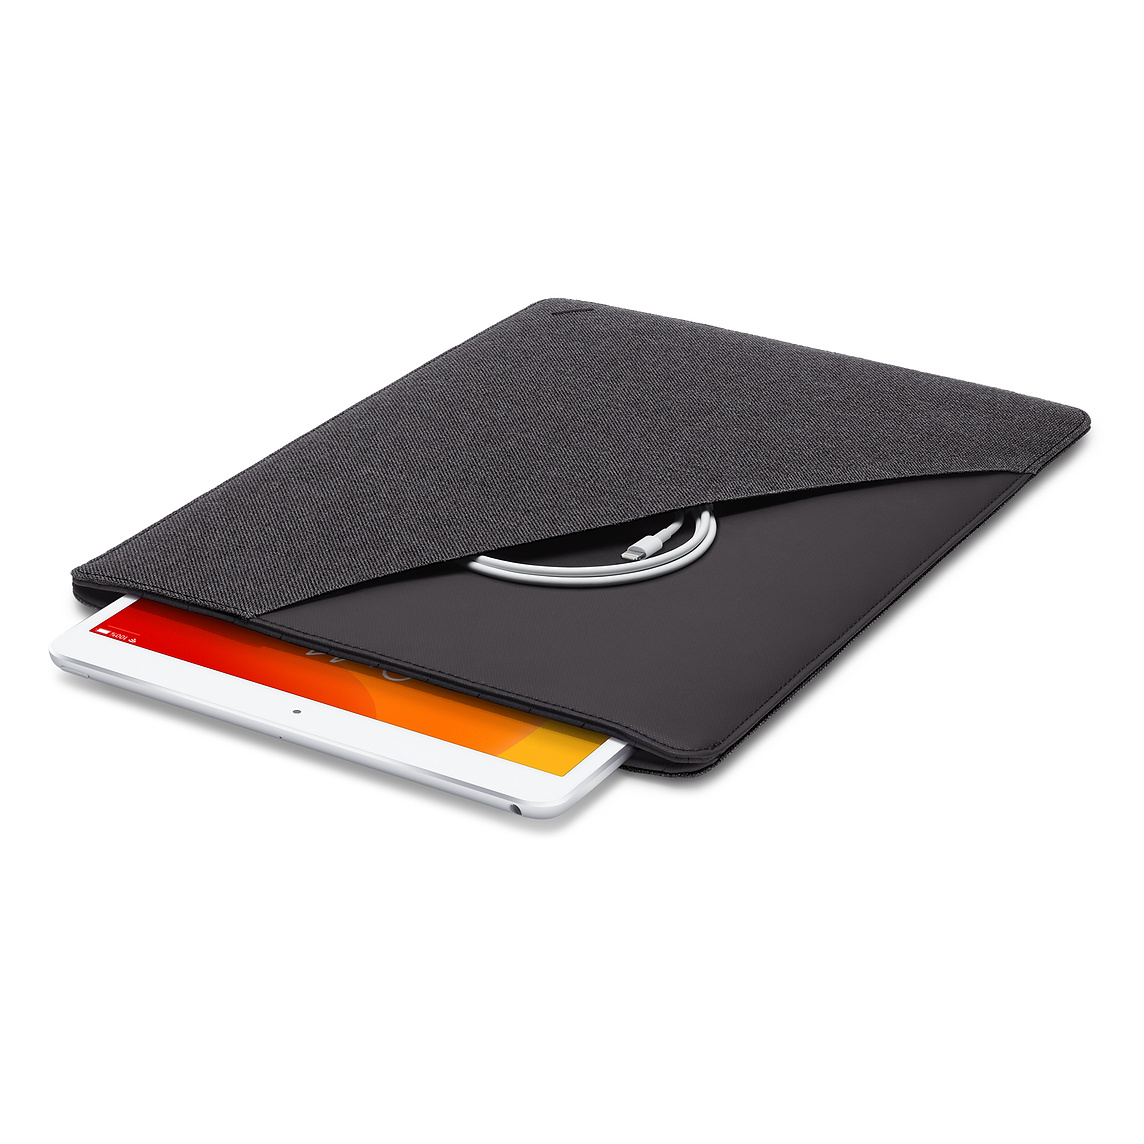 Bao Đựng Macbook NATIVE UNION Stow Slim Sleeve for MacBook 15/16 inch - Hàng Chính Hãng